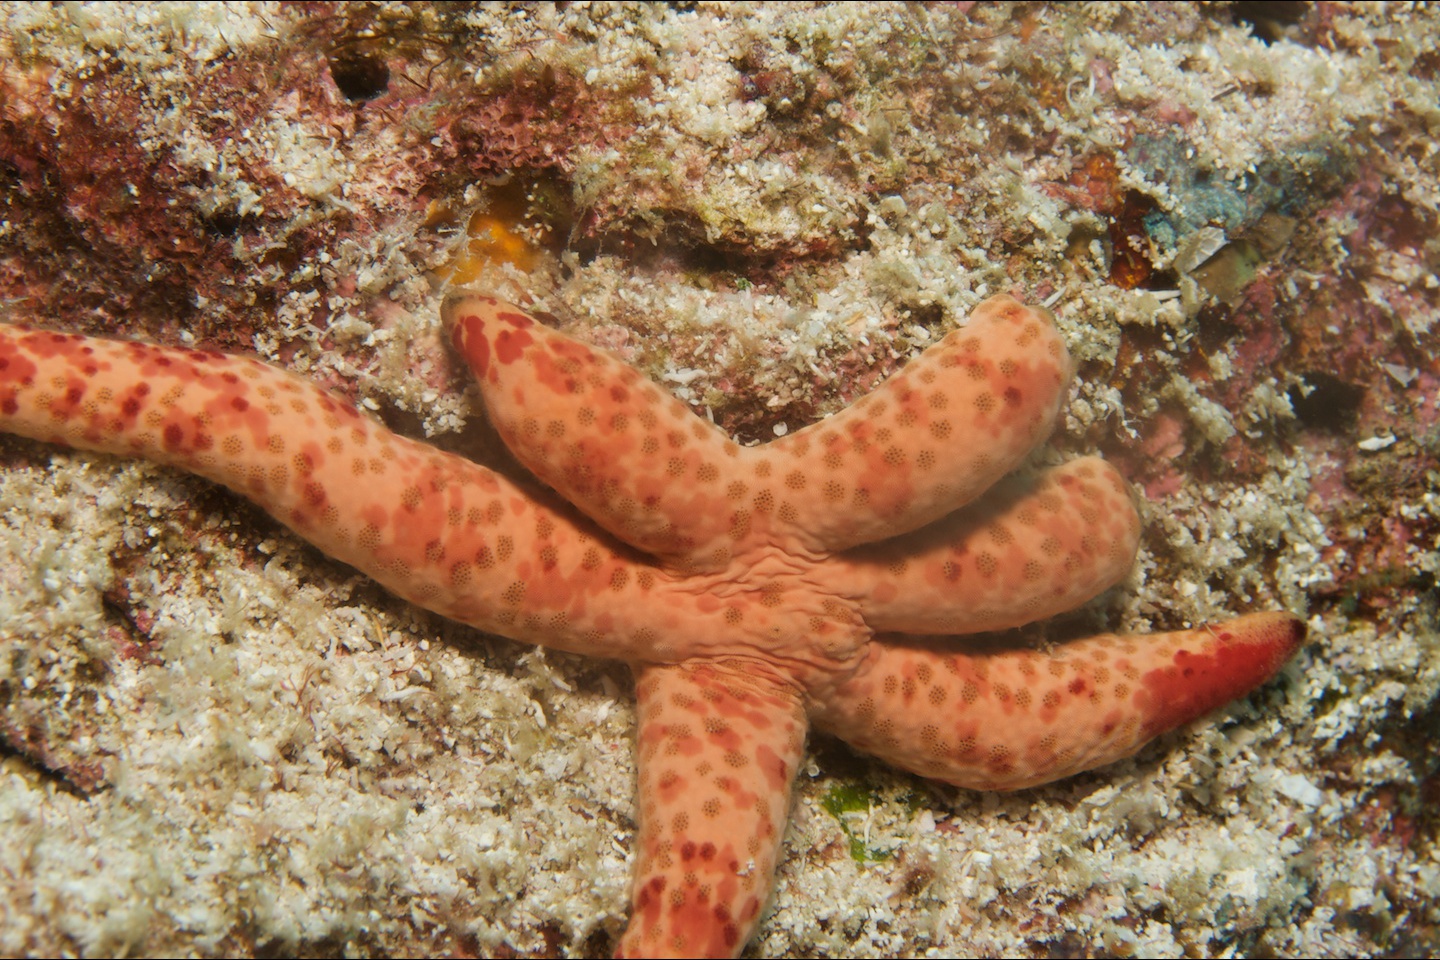 Multipore sea star